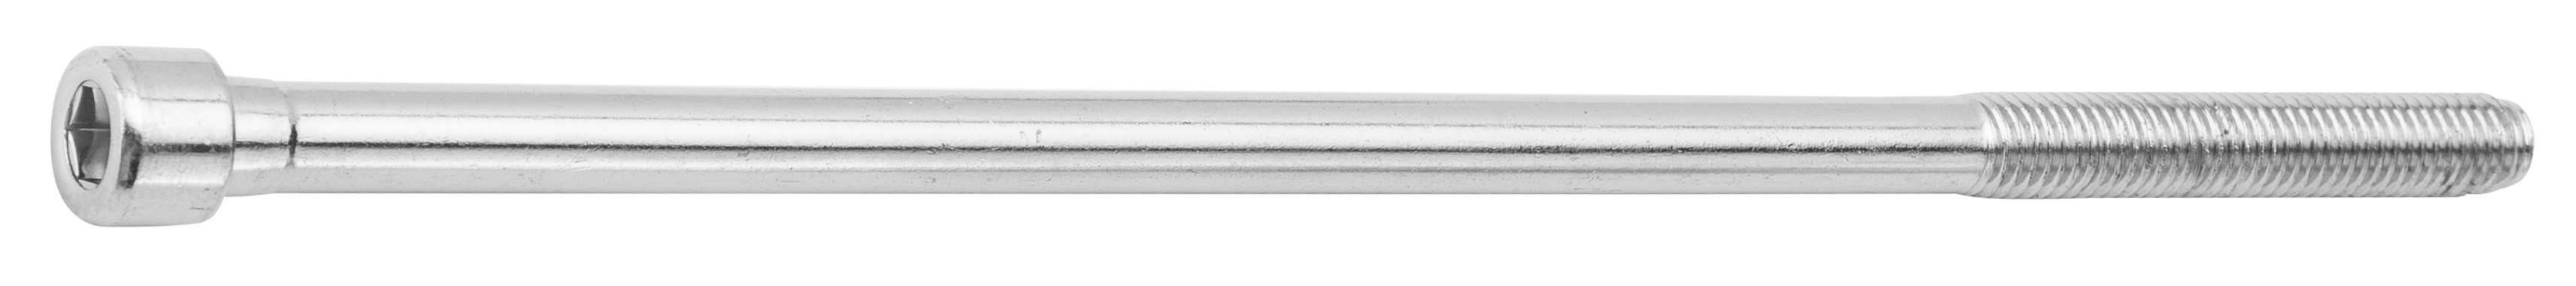 Болт выноса руля сталь (без гайки), 245 мм, под шестигранник